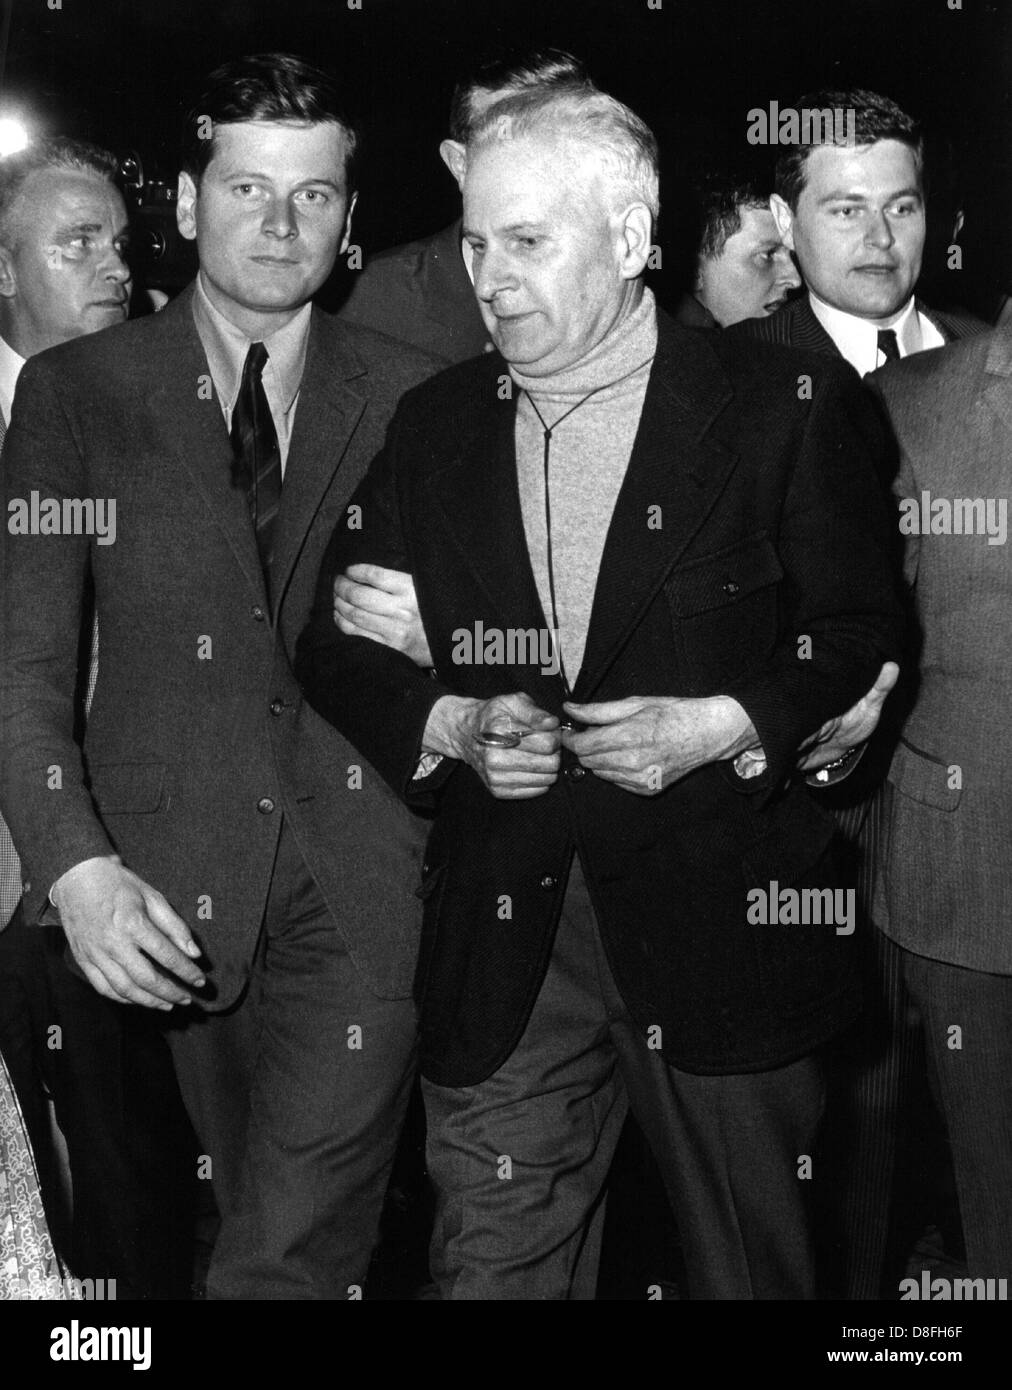 Baldur Von Schirach e suo figlio Robert (l) sul loro modo ad una breve conferenza stampa a Berlino poco dopo Schirach del rilascio. L'ex socialista nazionale il Ministro degli armamenti Baldur Von Schirach (r), è stato rilasciato dalla prigione per i criminali di guerra in Berlin-Spandau il 30 settembre 1966. Egli ha servito completamente la sua condanna di venti anni di prigione, alla quale era stato condannato durante i processi di Norimberga nel 1946. Foto Stock